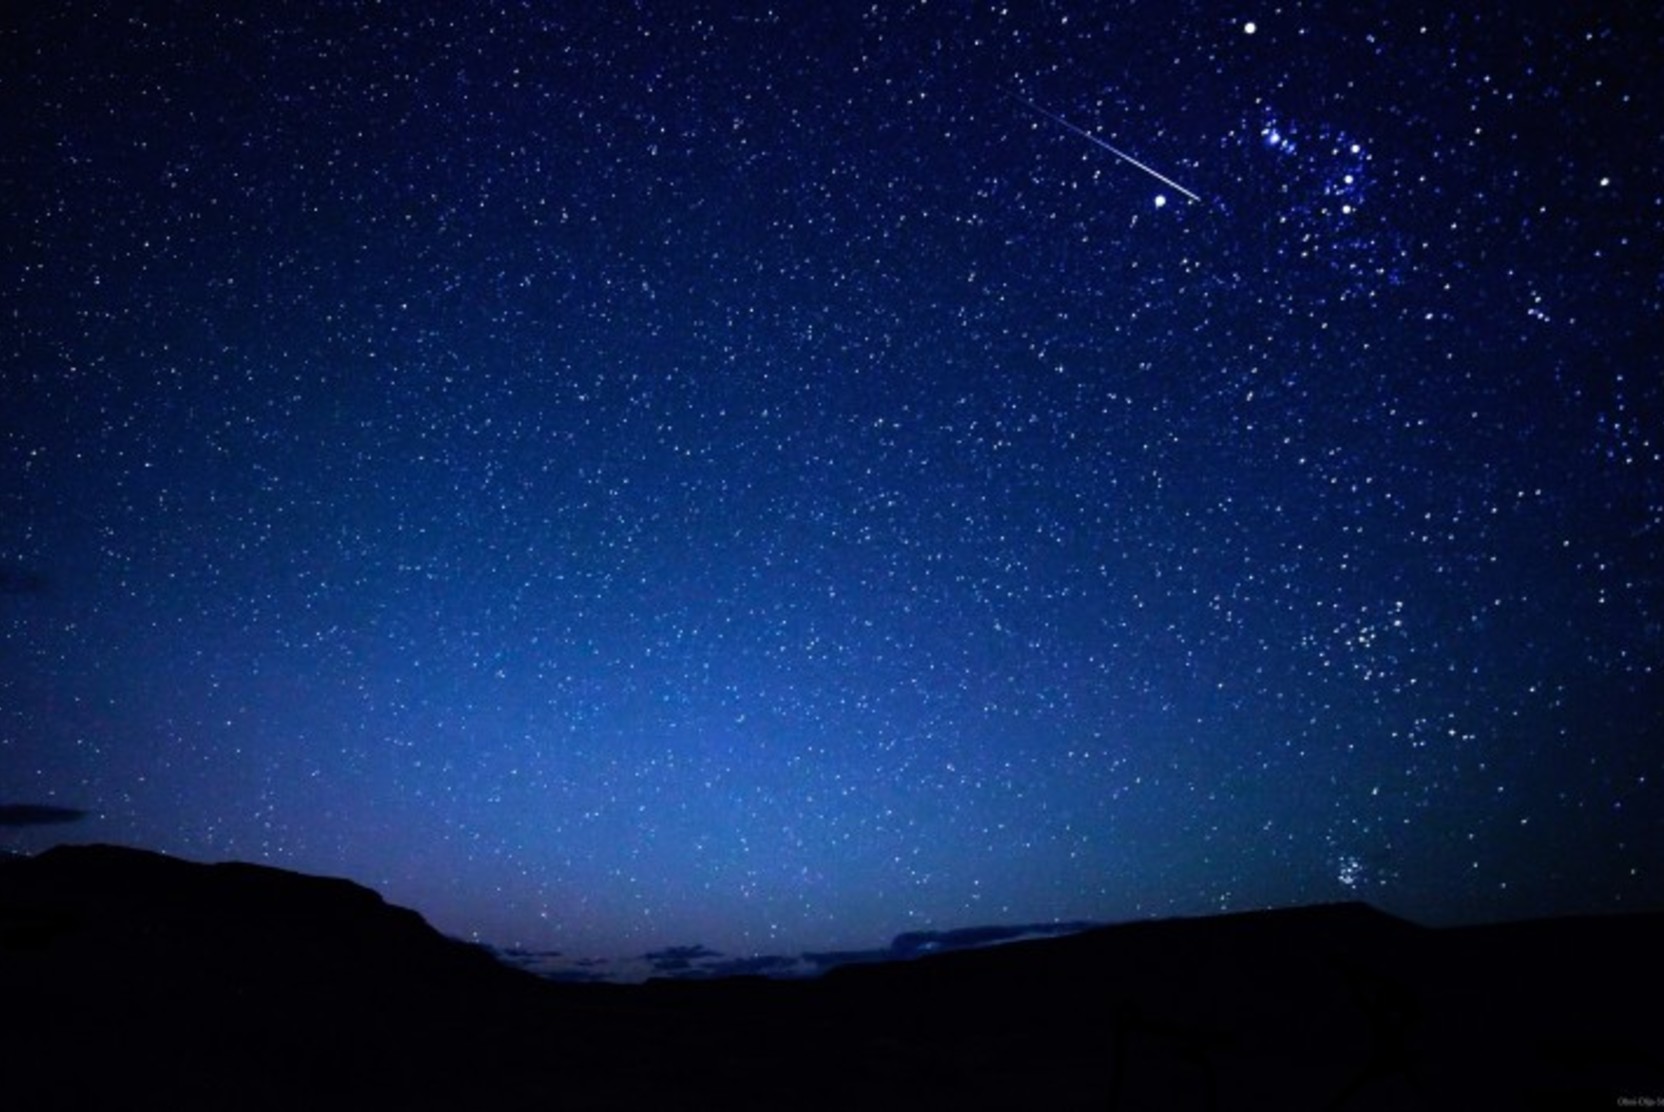 Крымский астроном обнаружил первую межзвездную комету